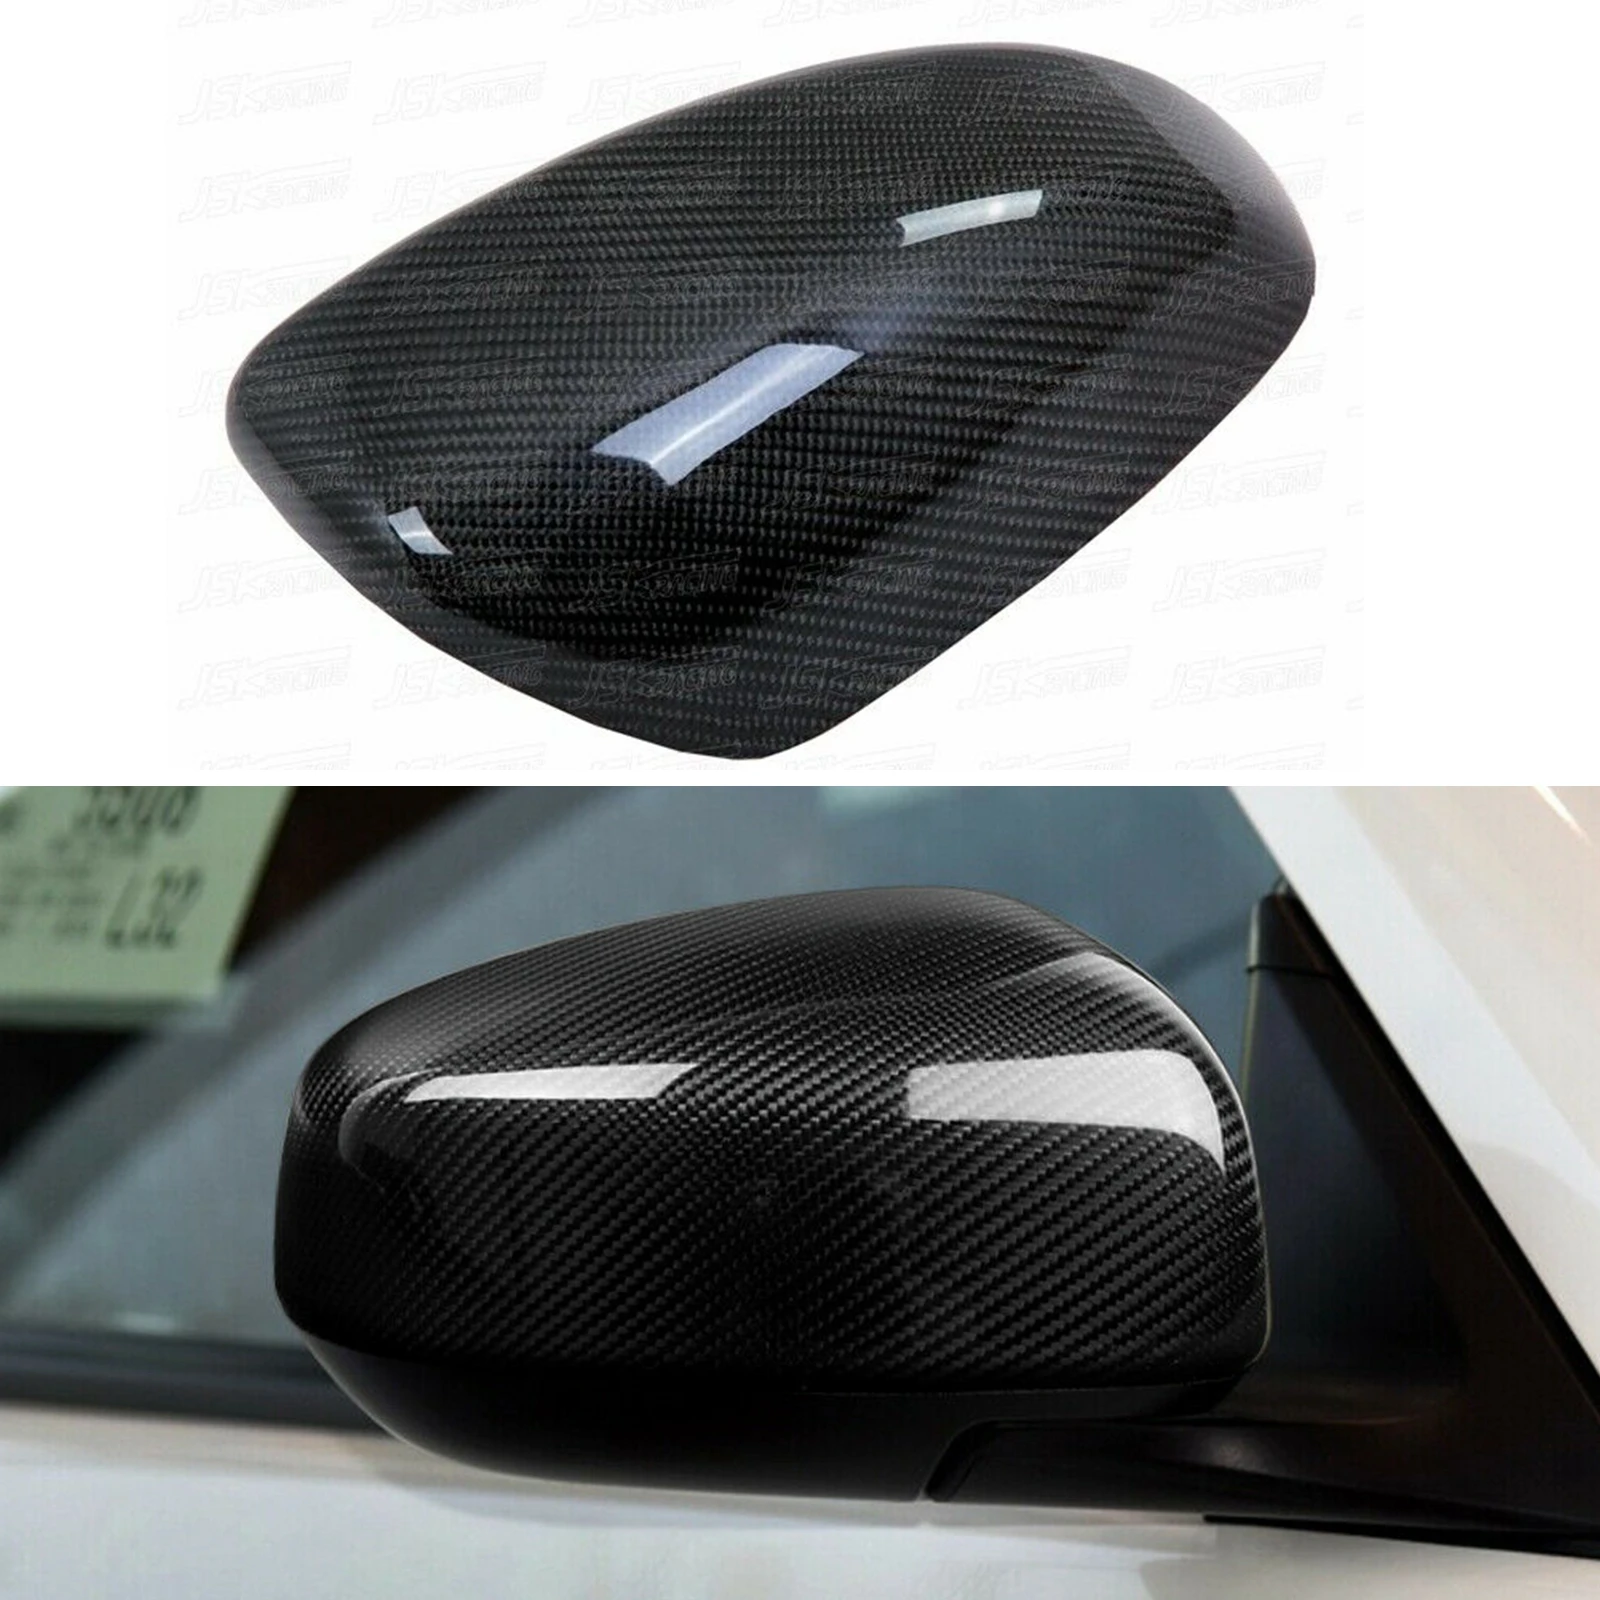 

Car Carbon Fiber Side Mirrors Cover For Nissa 370Z Z34 2009-2015 2010 2011 2012 2013 2014(JSKNS7Z09022)